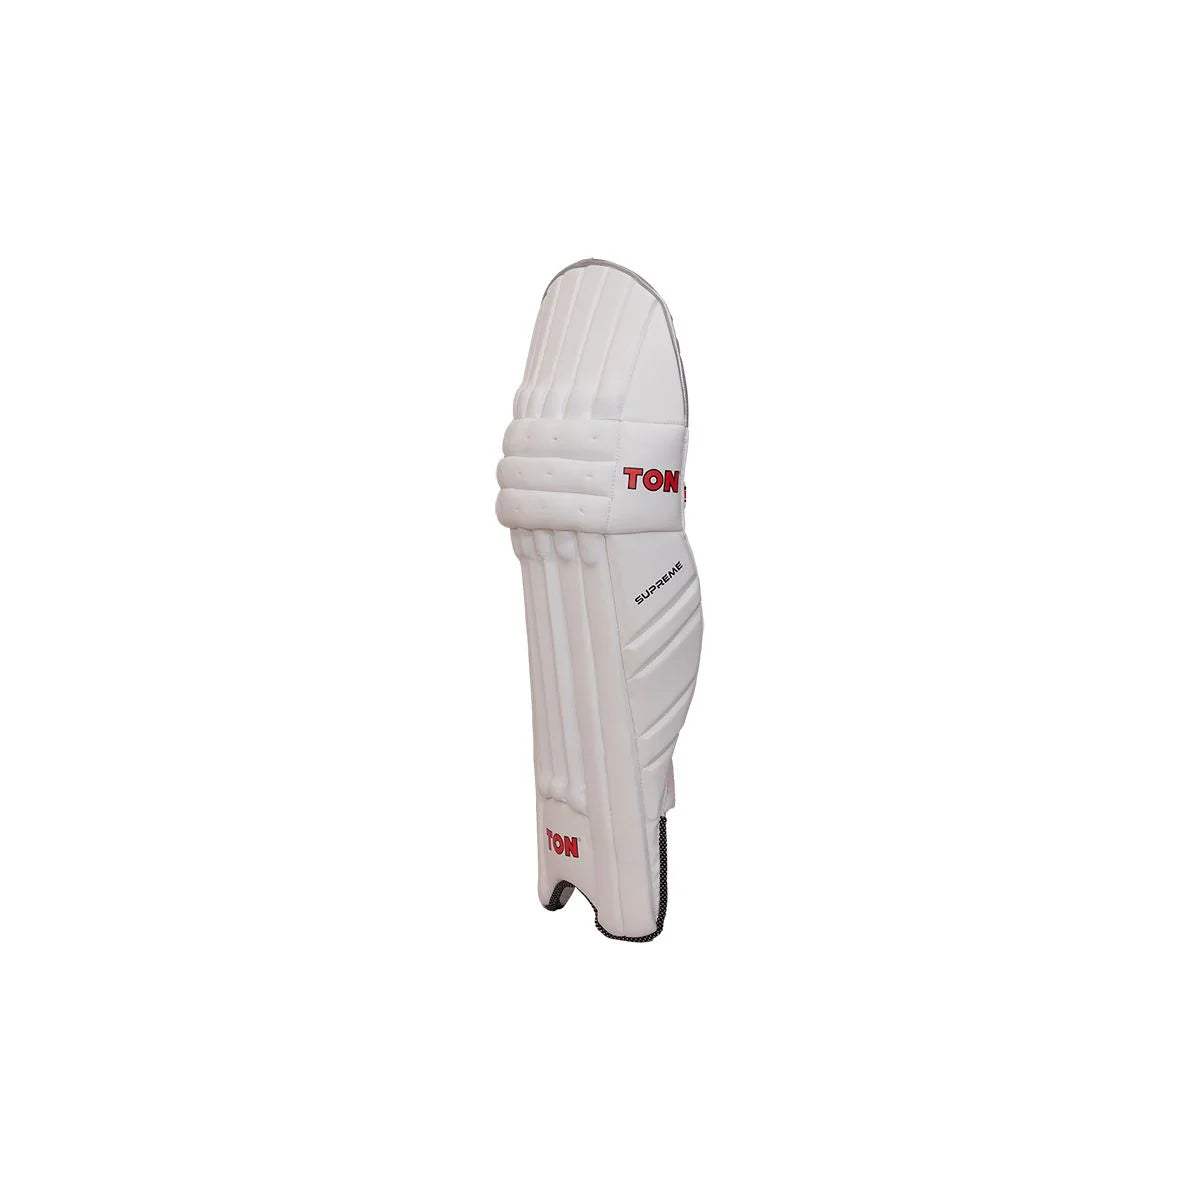 एसएस टन सुप्रीम लाइट वेट क्रिकेट बैटिंग पैड 2 का पैक